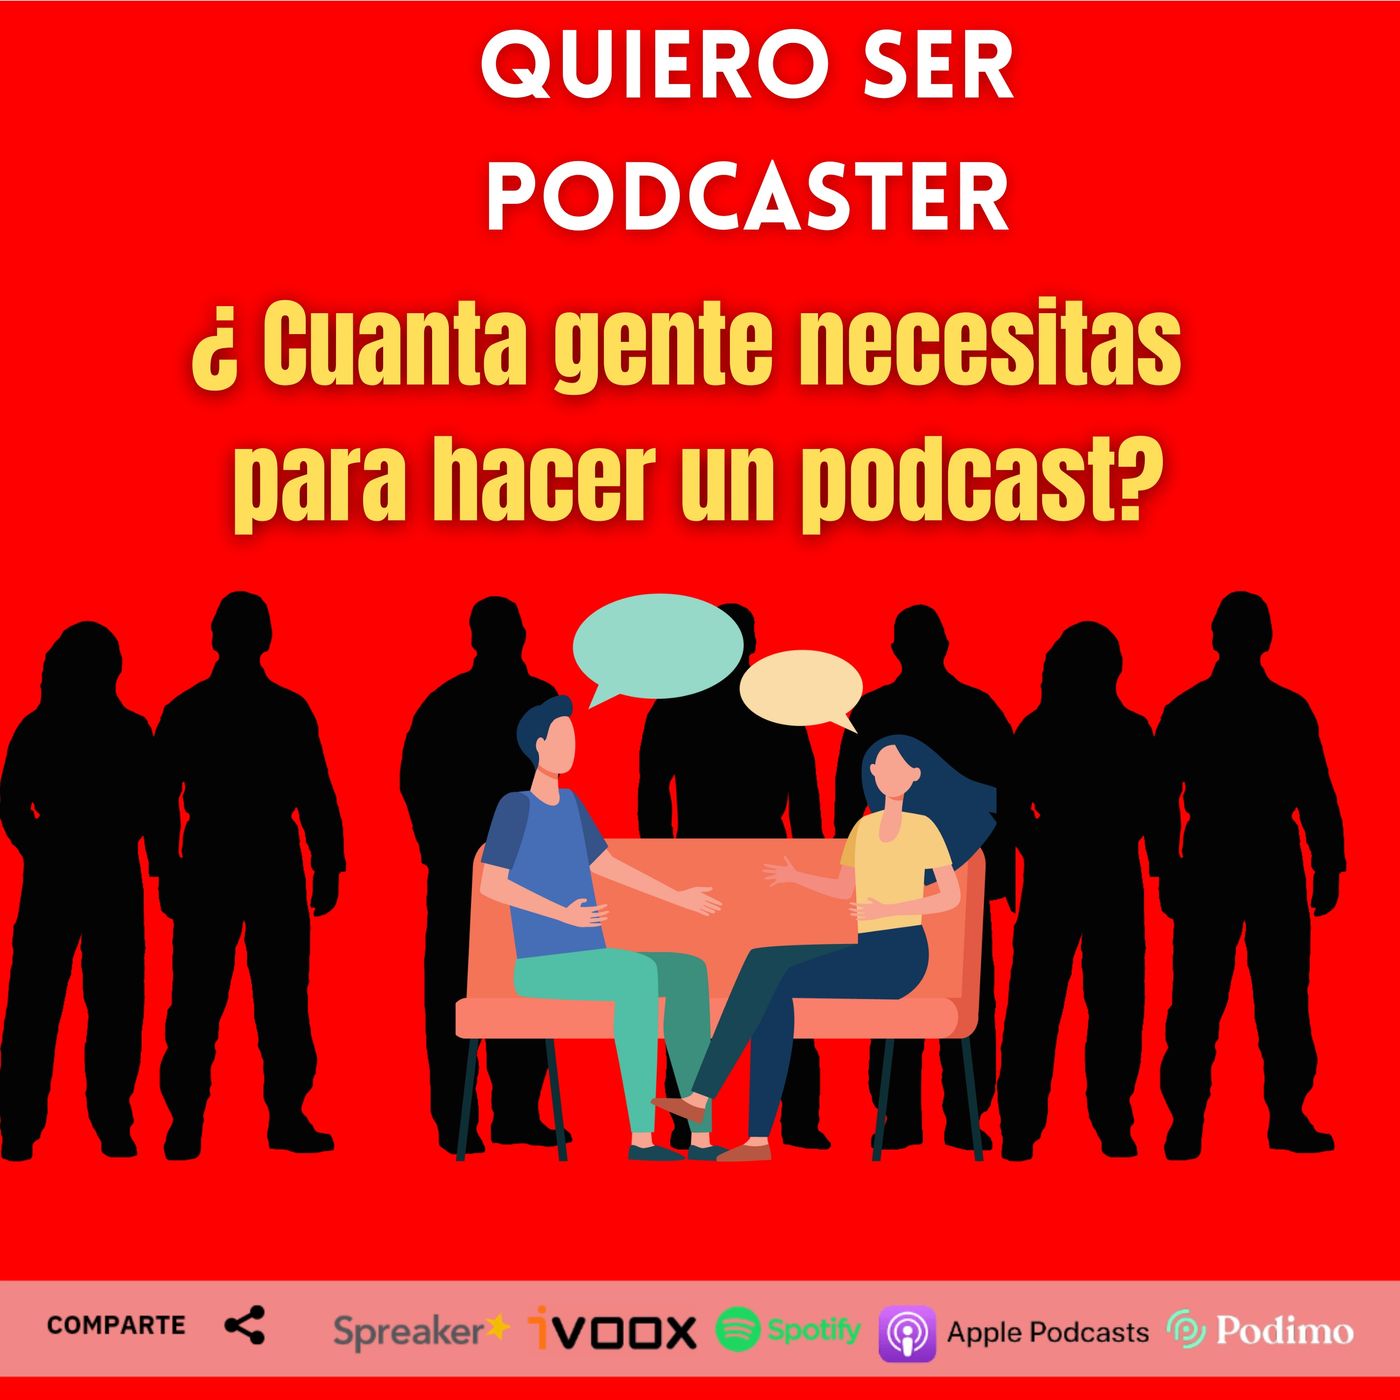 ¿ Cuanta gente necesitas para grabar un podcast ? y recomendación de audiolibro de @ArturoGCampos